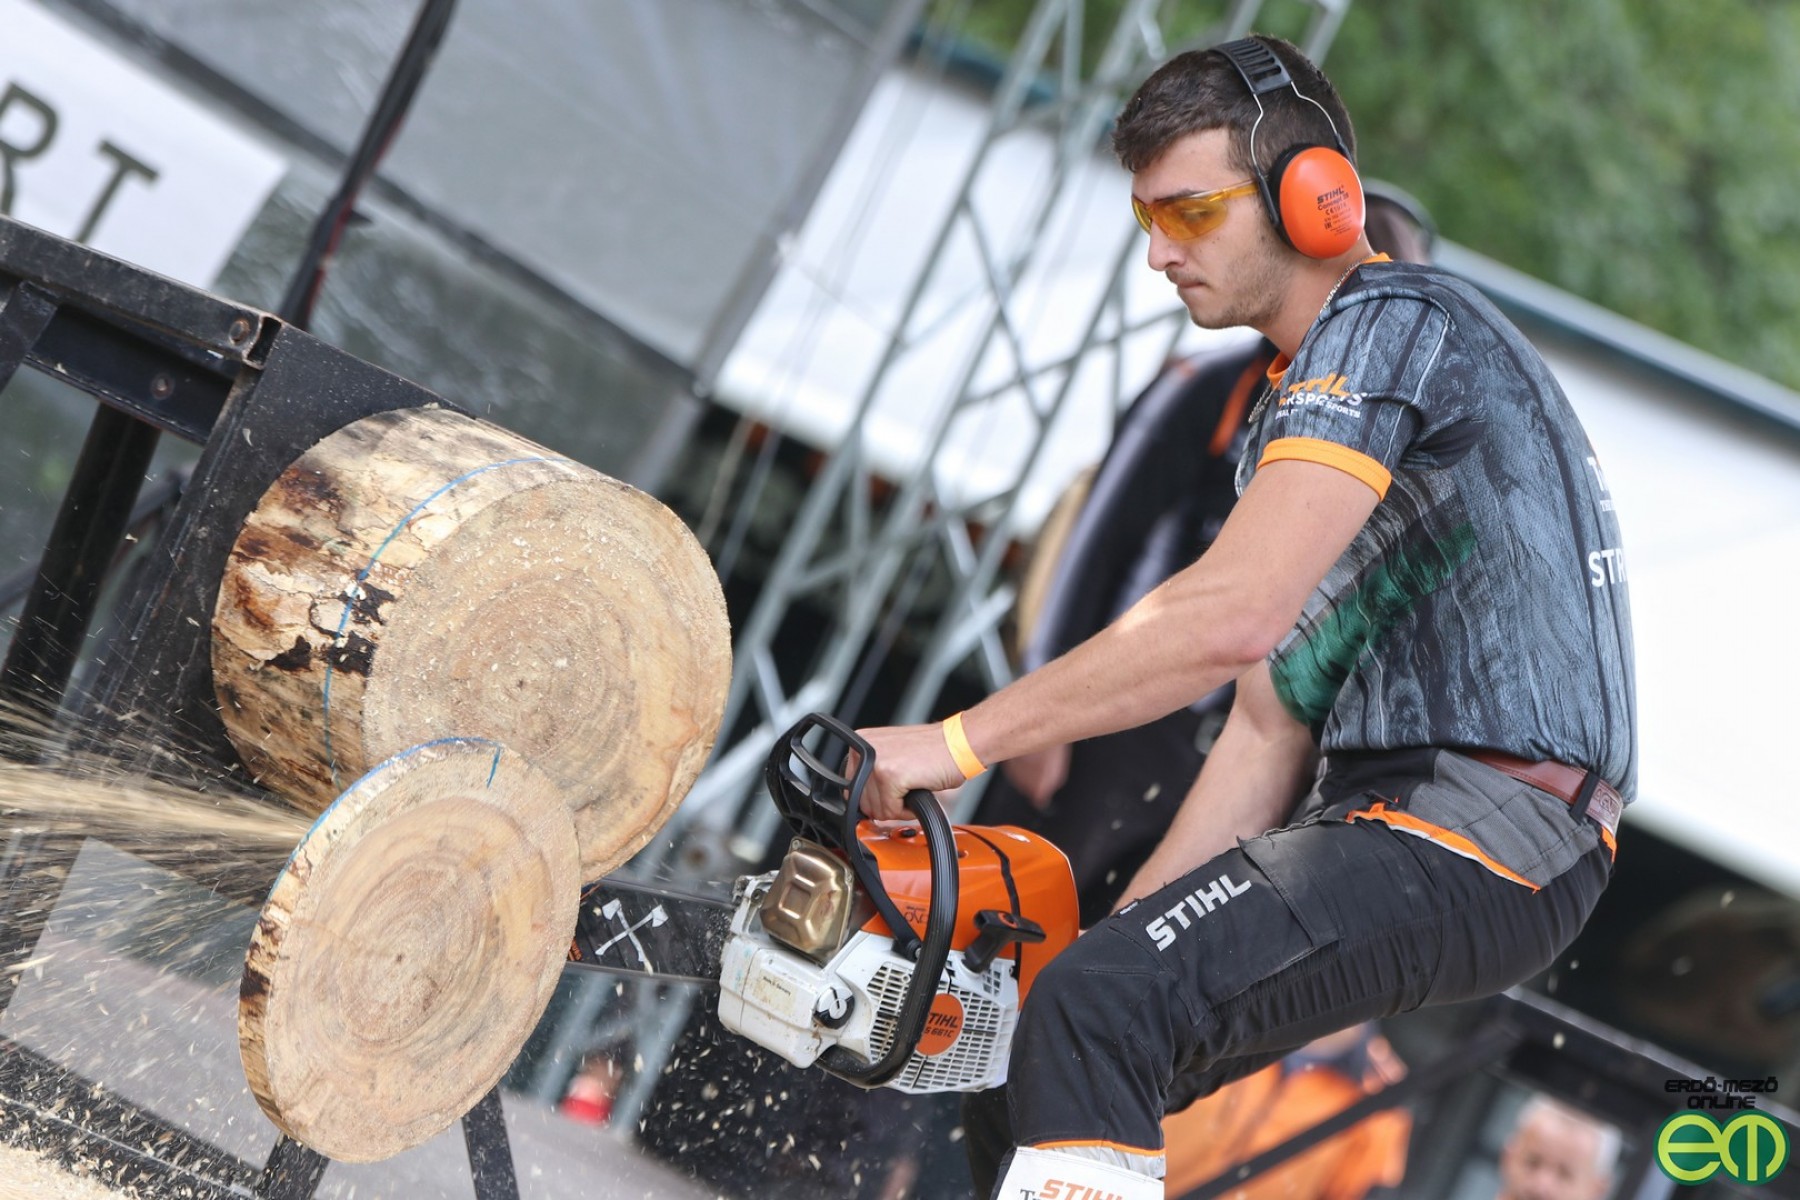 Strúbel Bence sérülés miatt kihagyja a VB-kvalifikációs versenyt - STIHL Timbersports